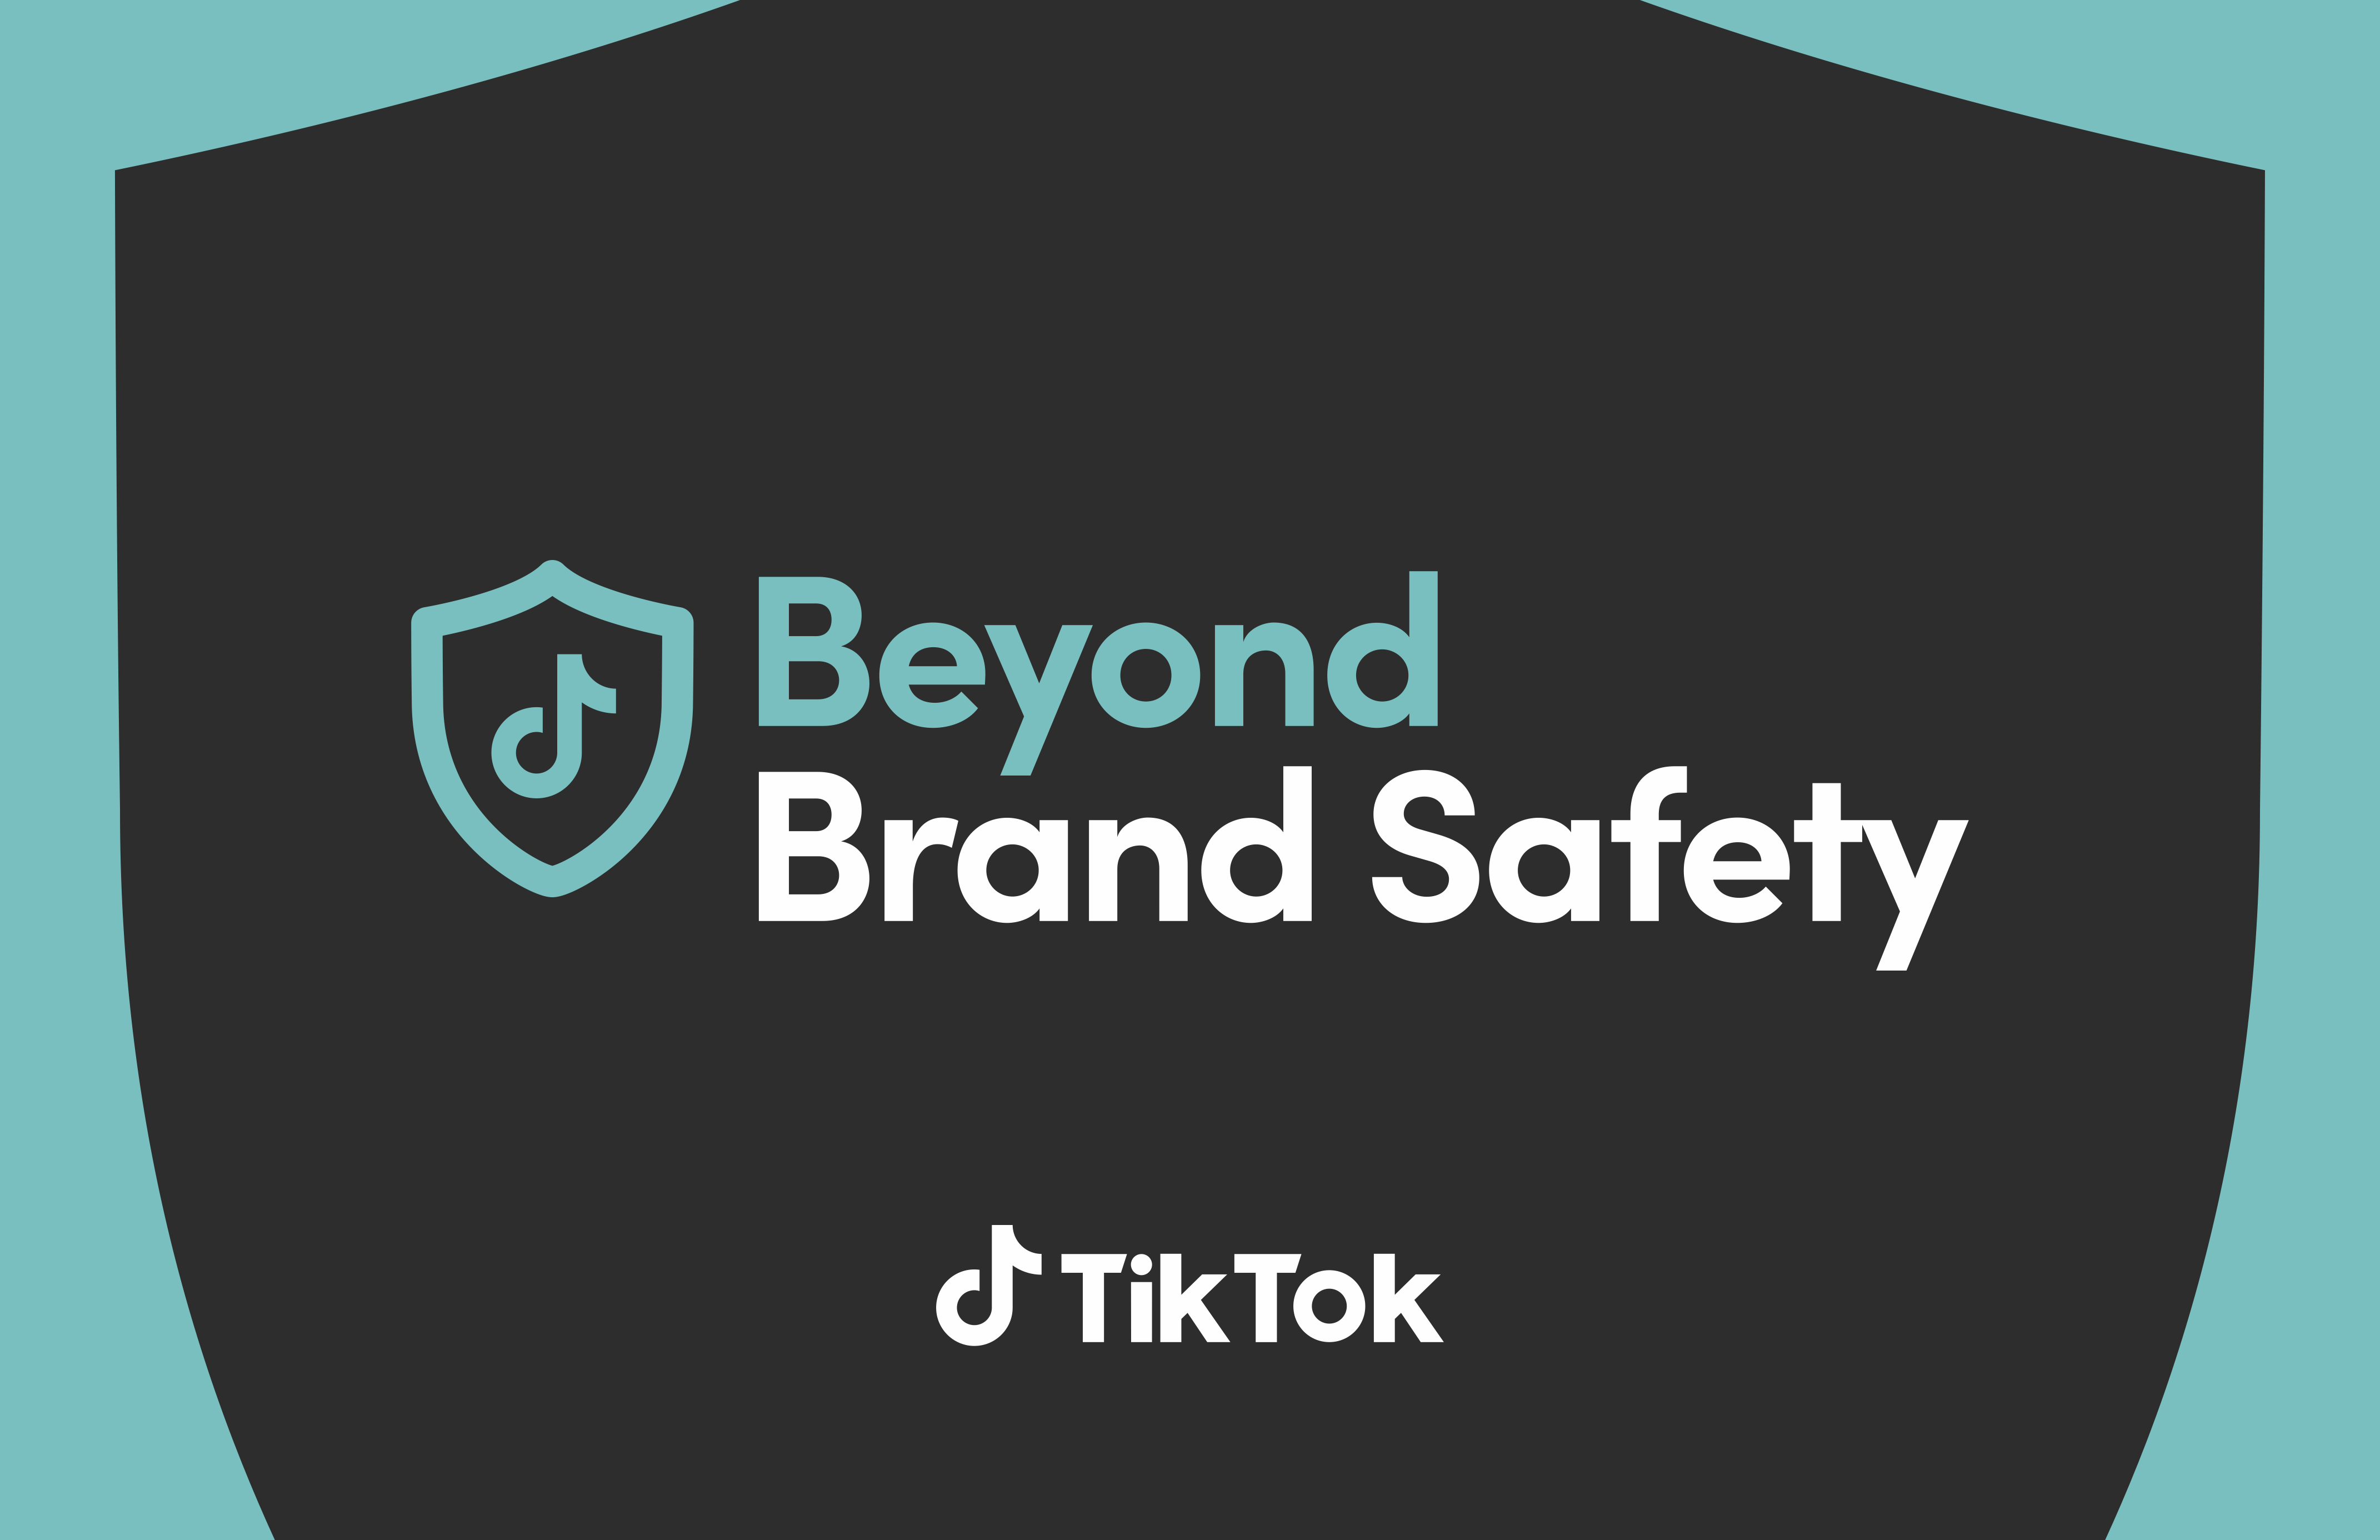 Beyond Brand Safety